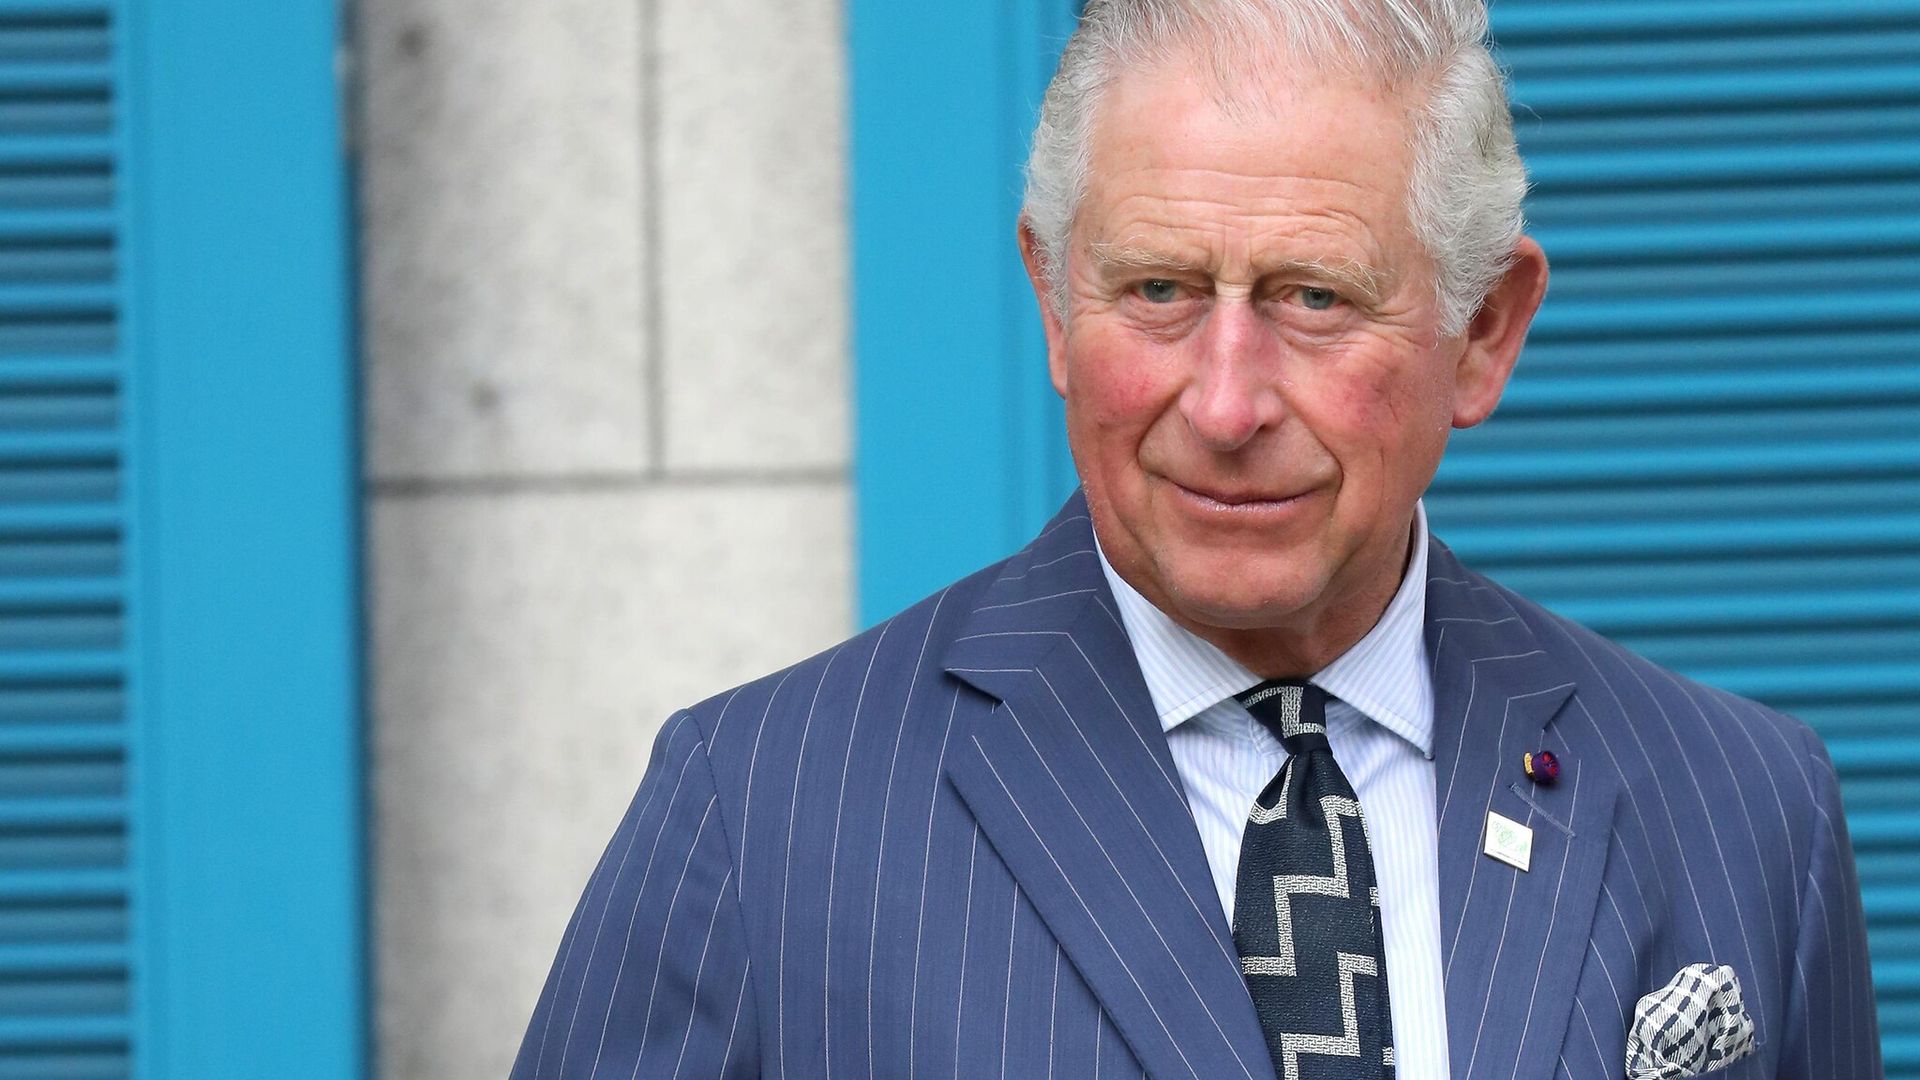 El Príncipe Carlos, de 71 años, da positivo en coronavirus